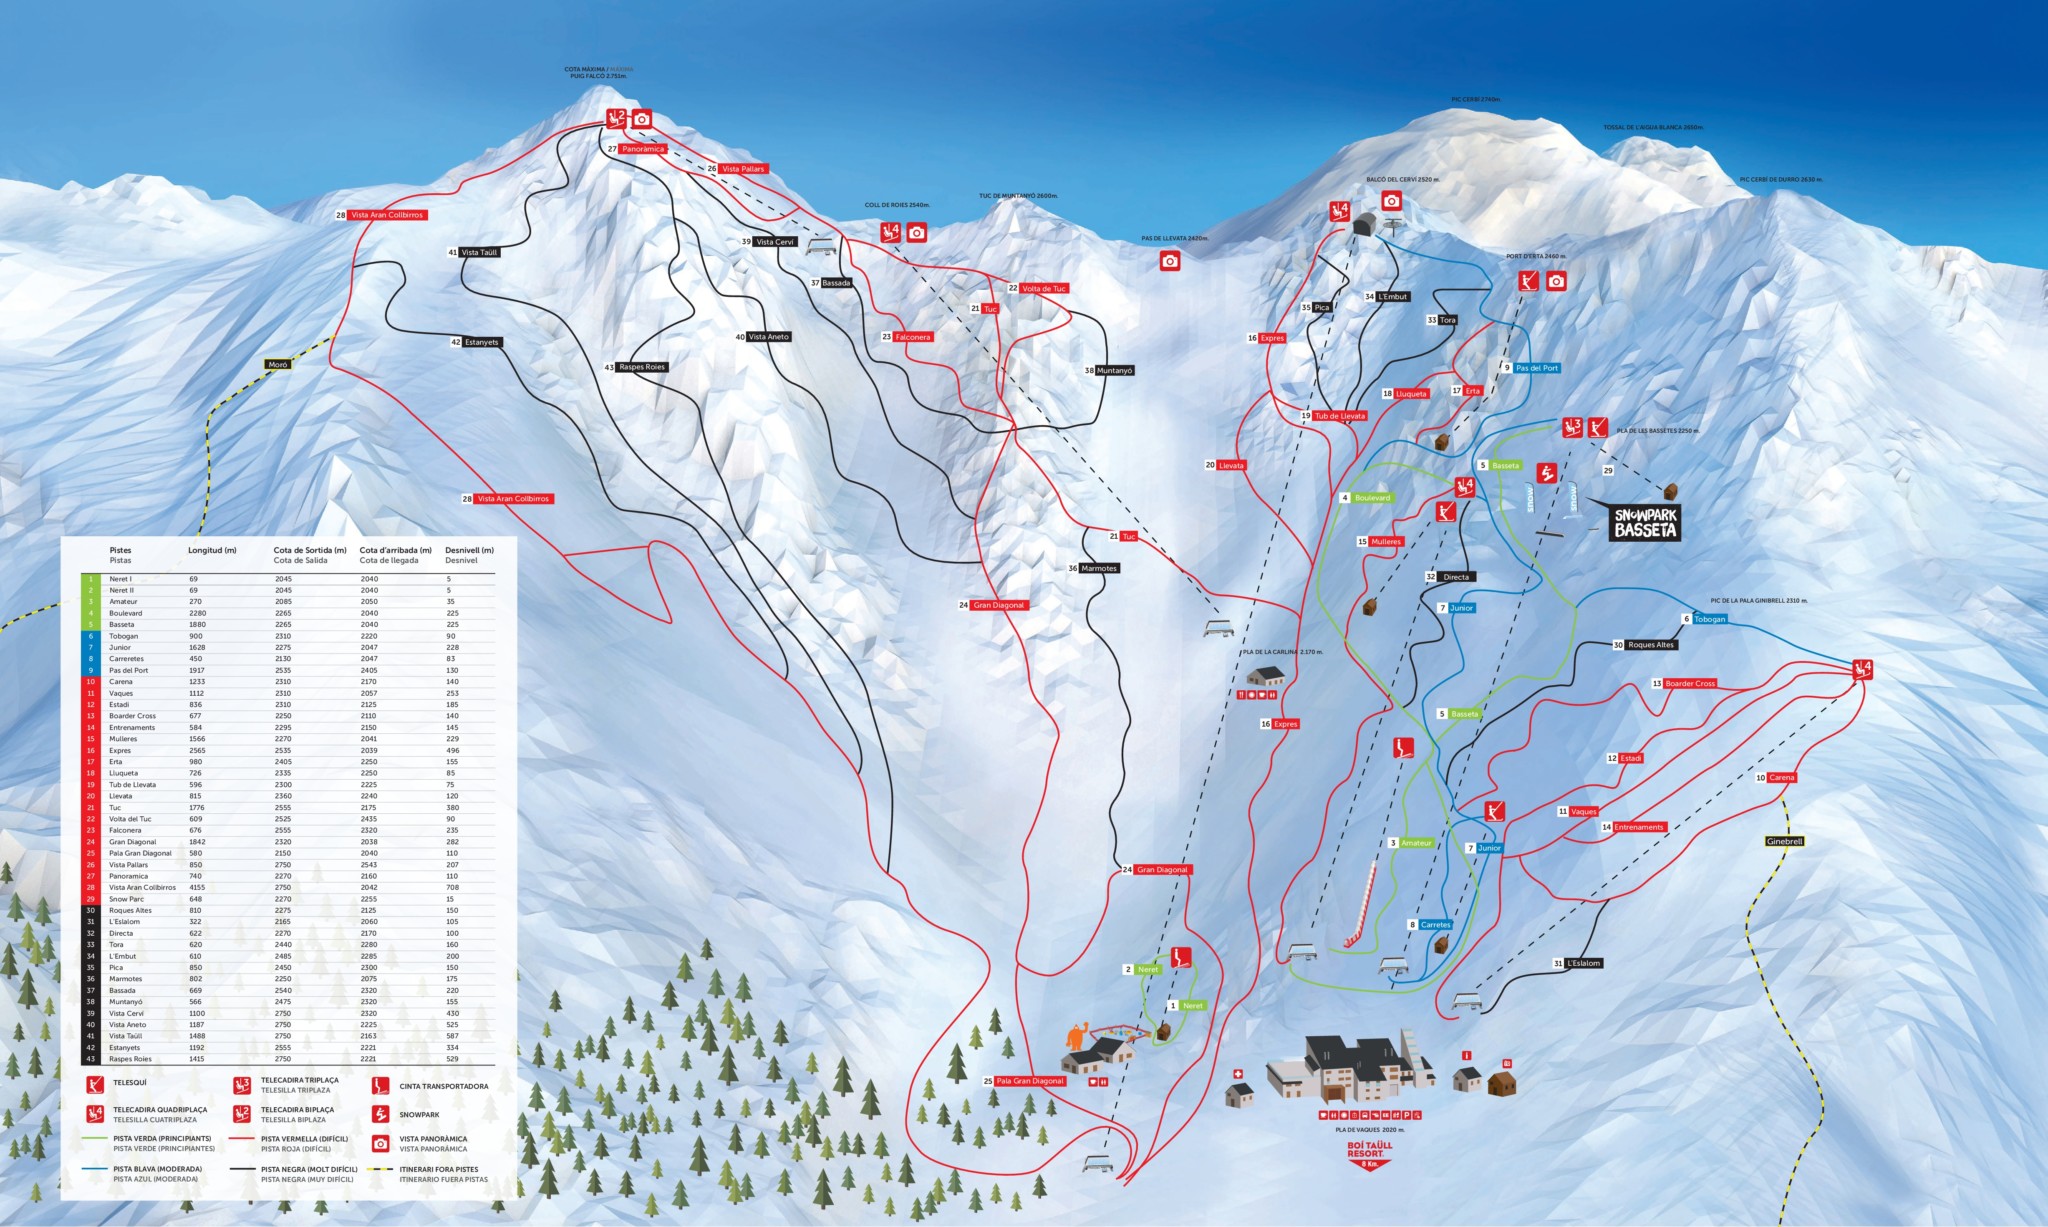 Esquiar en Boí Taüll, plan que no te puedes perder en invierno si visitas la Vall de Boí - Guía Turística hotel L'Aut.